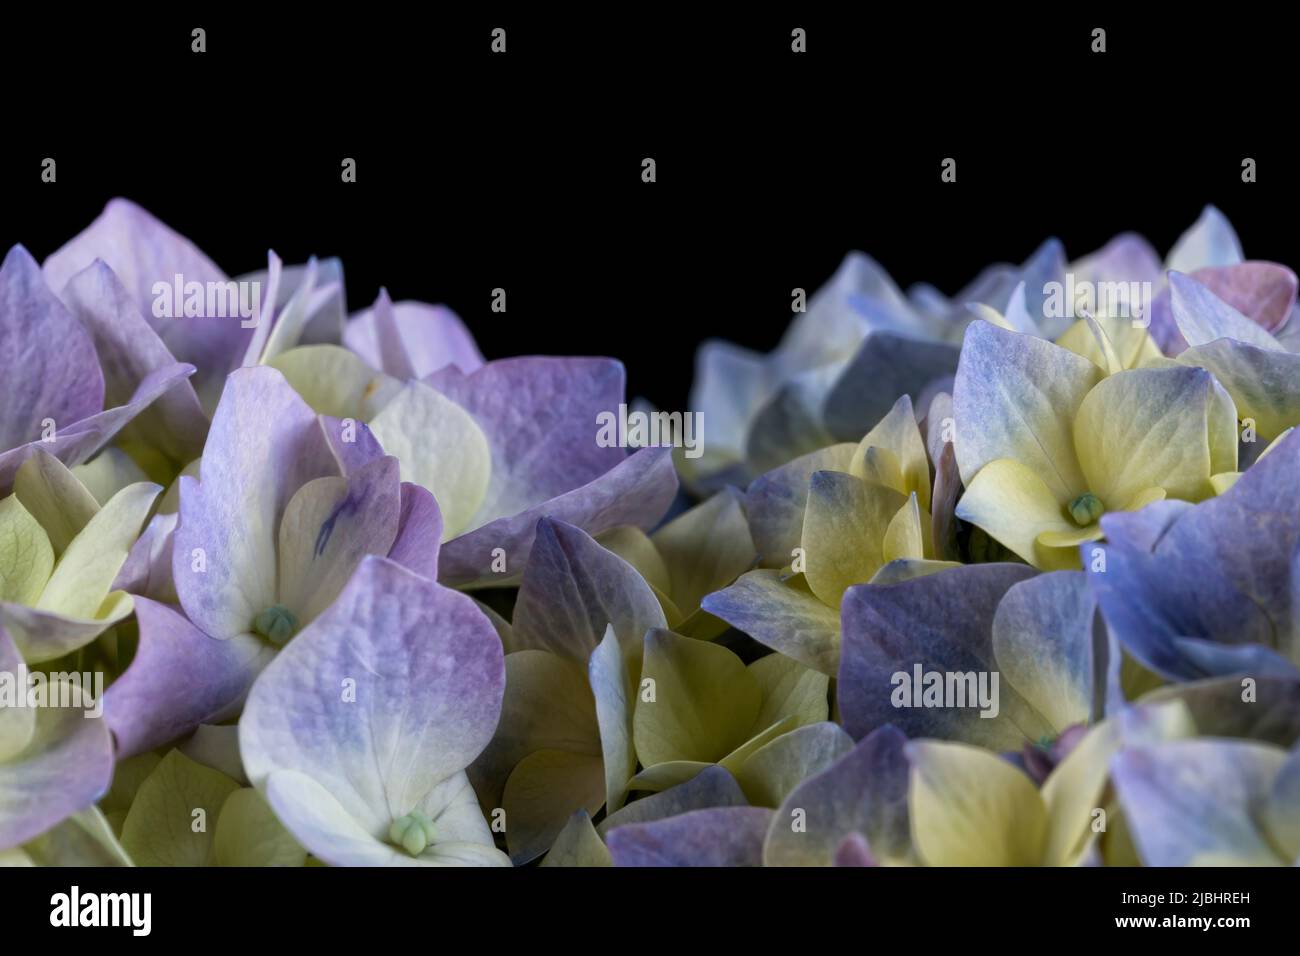 Détail macro d'une fleur d'hortensia isolée sur fond noir Banque D'Images